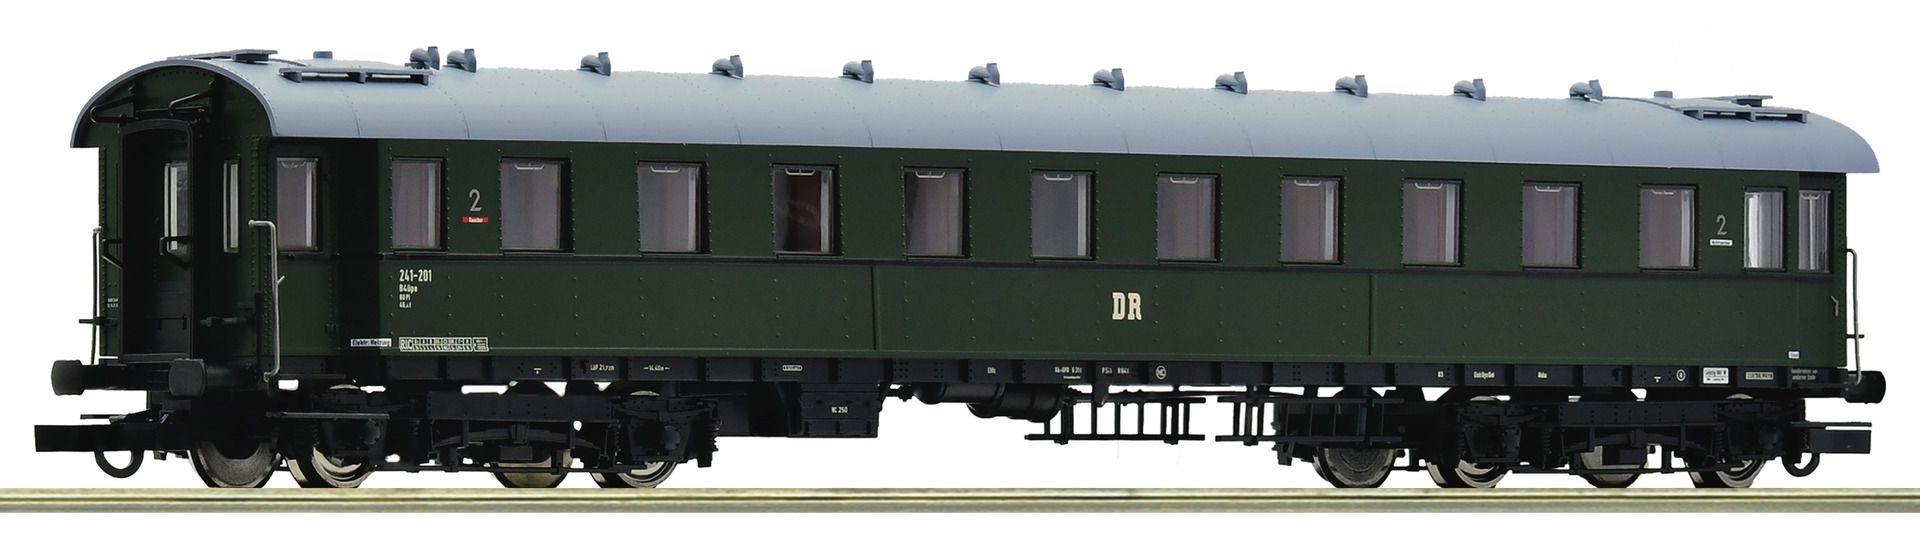 Roco 74862 - Personenwagen B4üe, 2. Klasse, DR, Ep.III